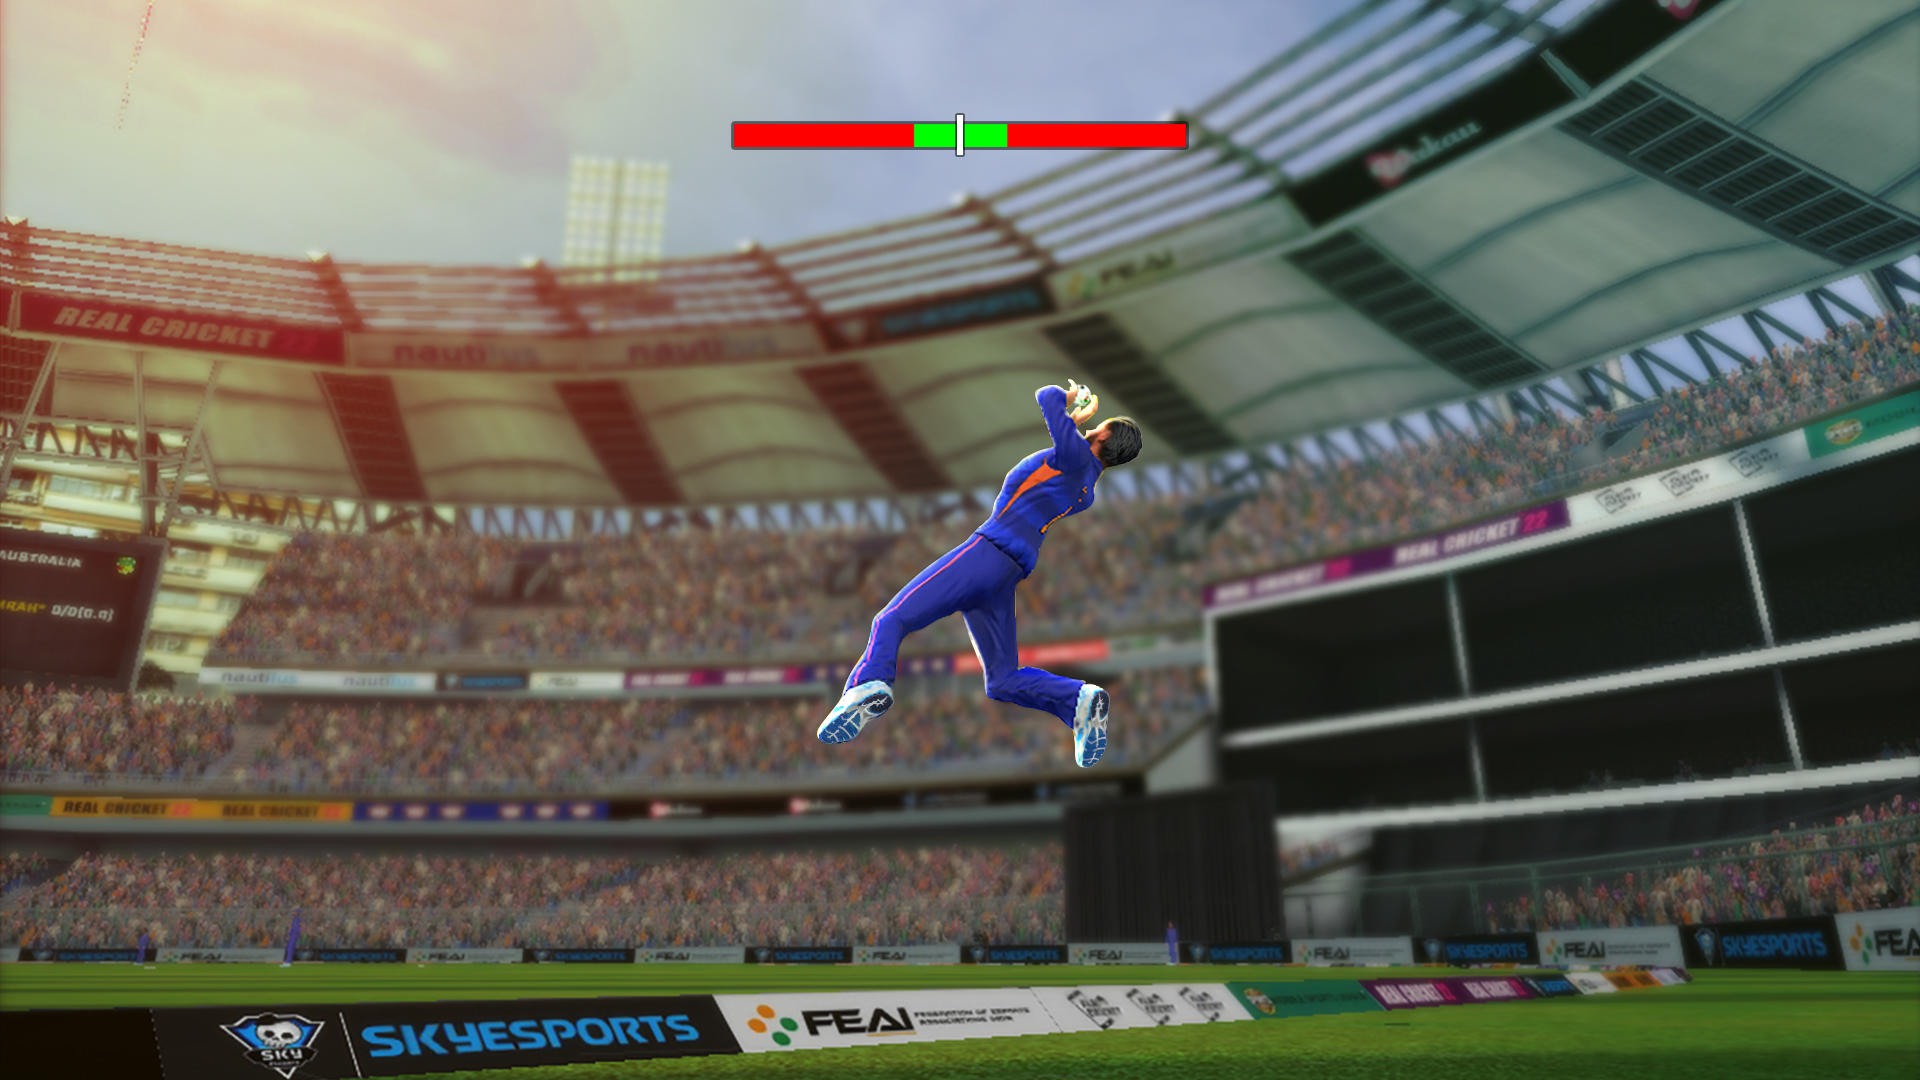 Screenshot of Real Cricket™ 22